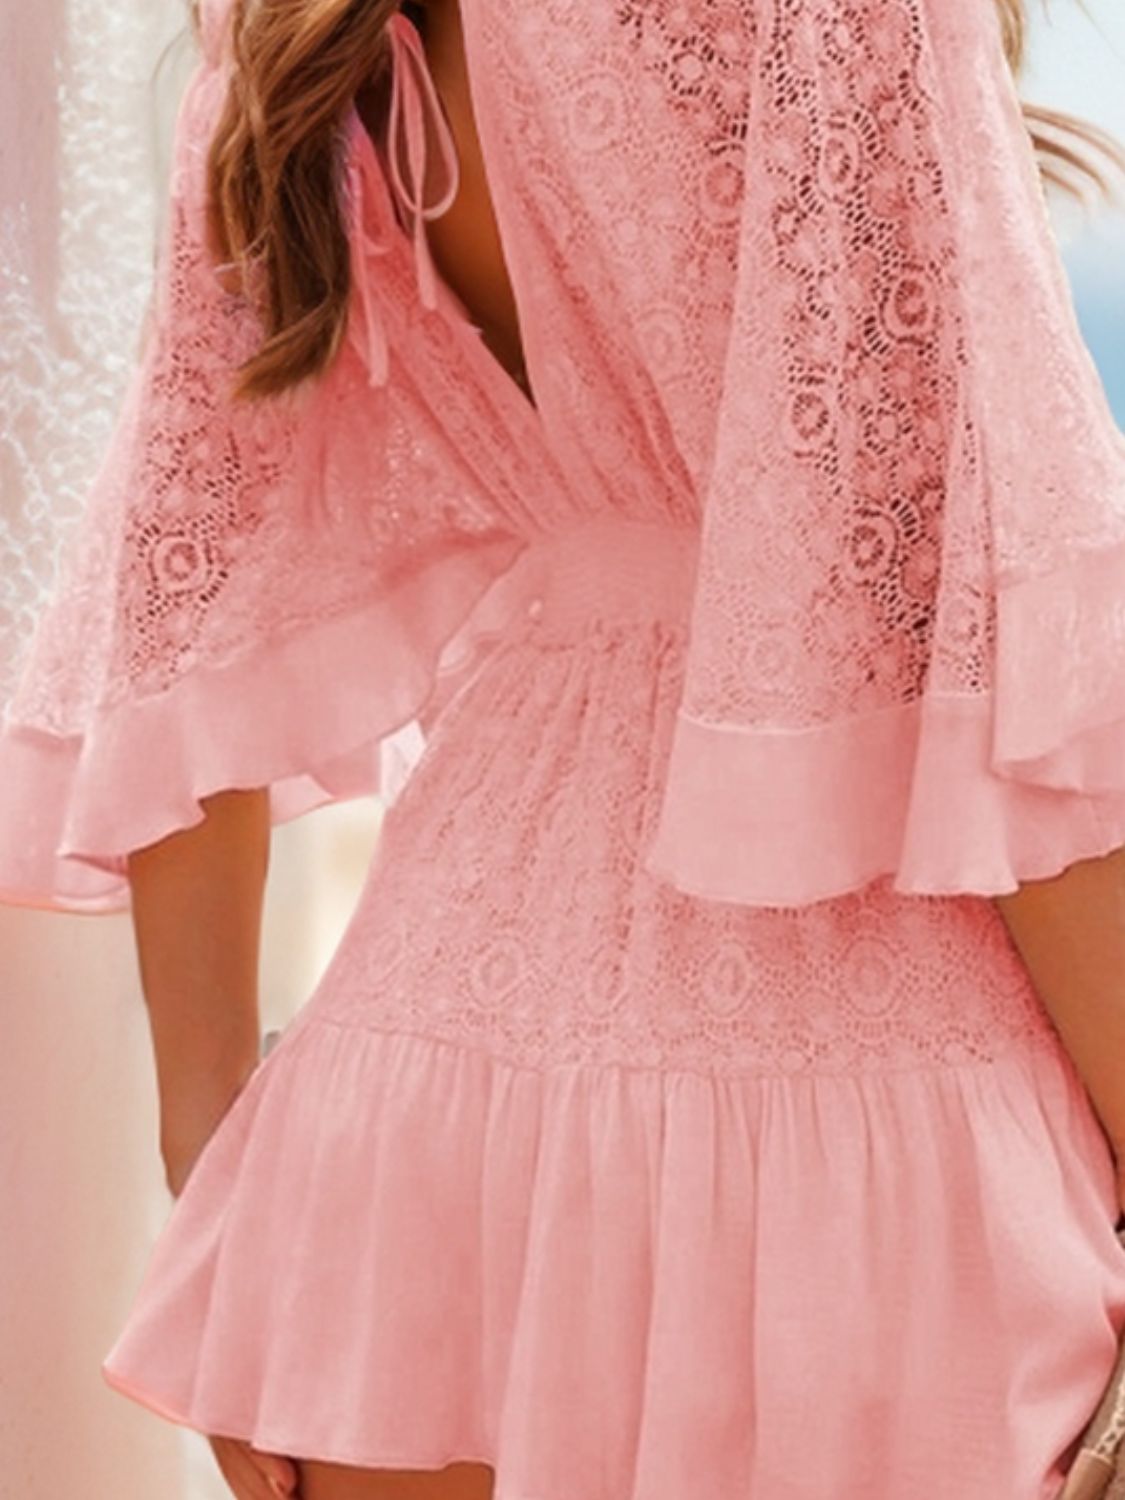 TEEK - Lace Cutout Half Sleeve Mini Dress DRESS TEEK Trend Blush Pink S 